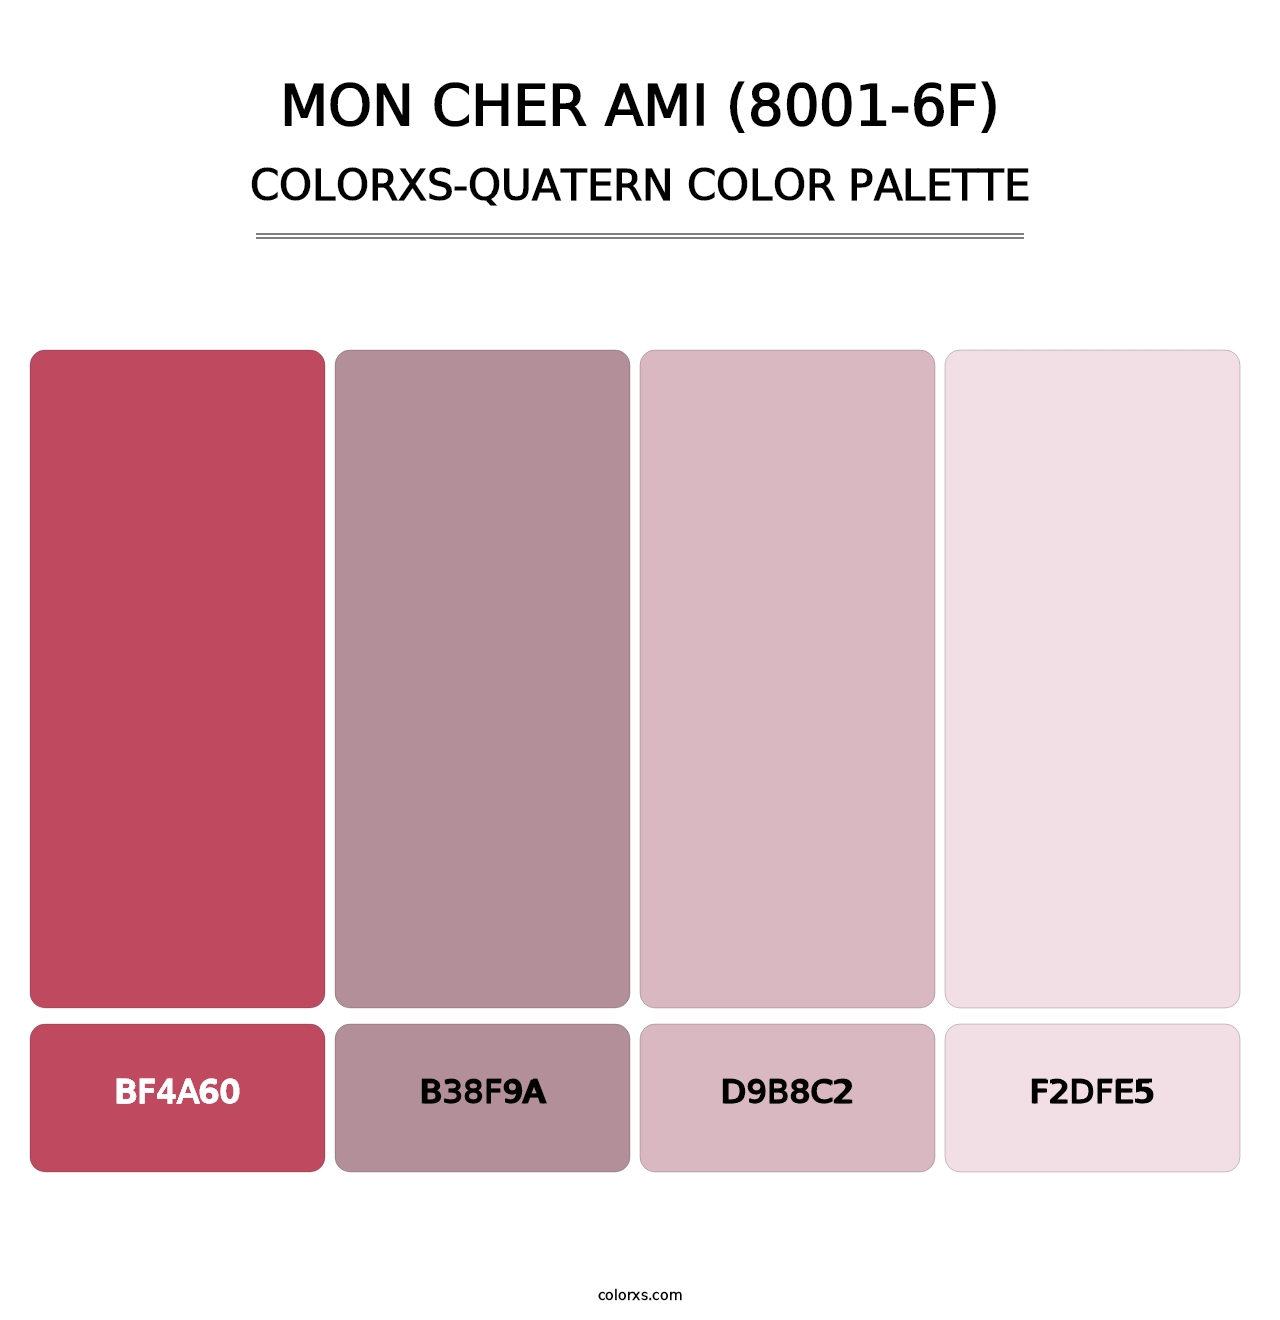 Mon Cher Ami (8001-6F) - Colorxs Quatern Palette